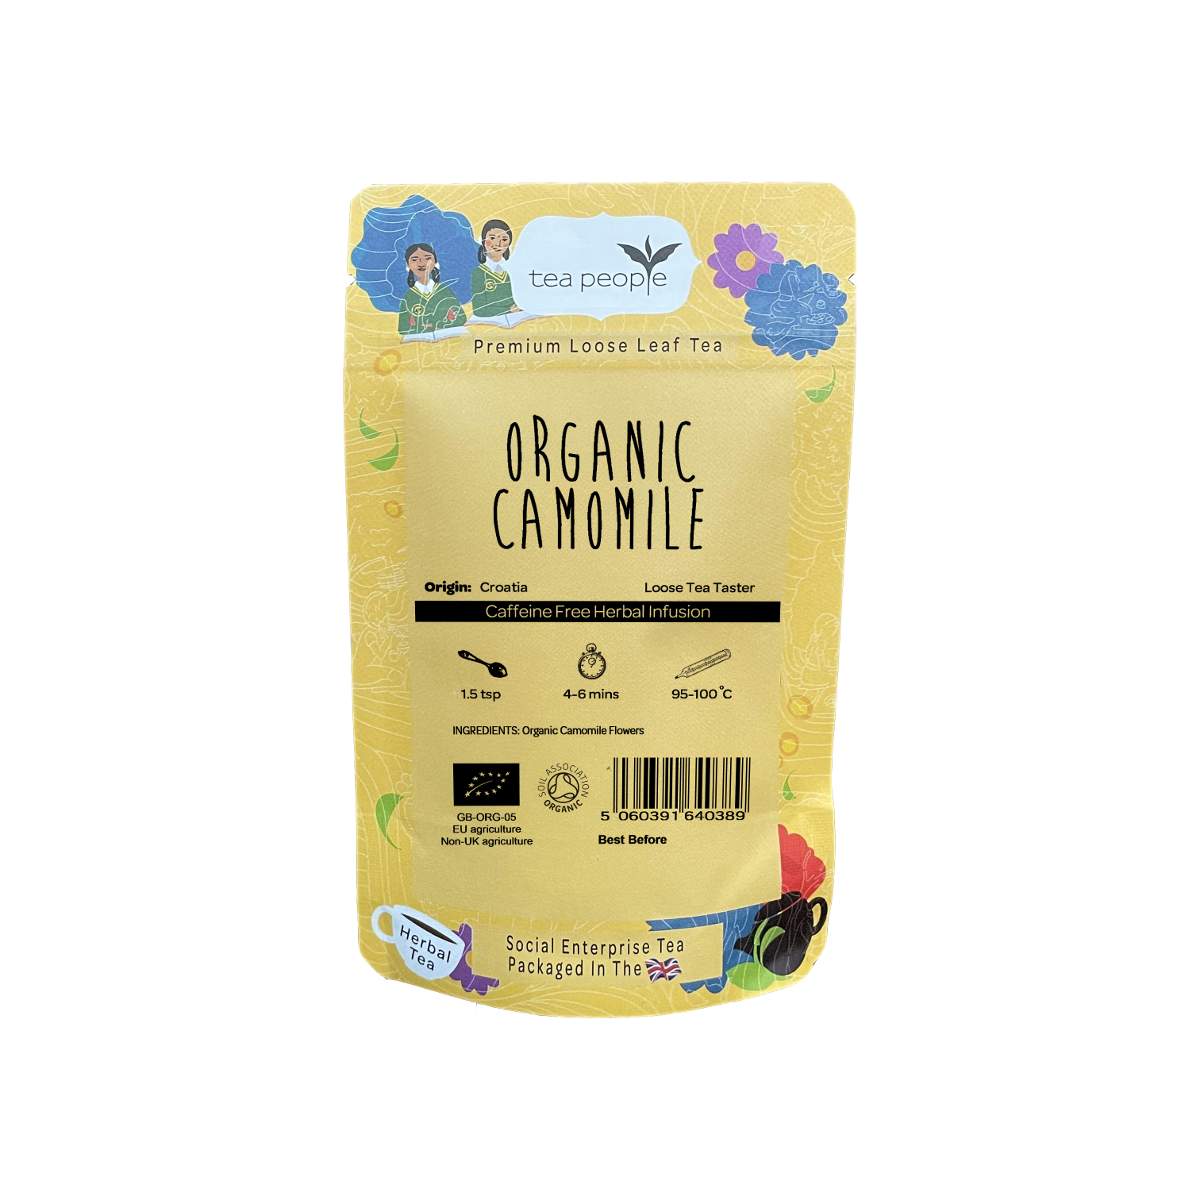 Organic Camomile - Loose Herbal Tea